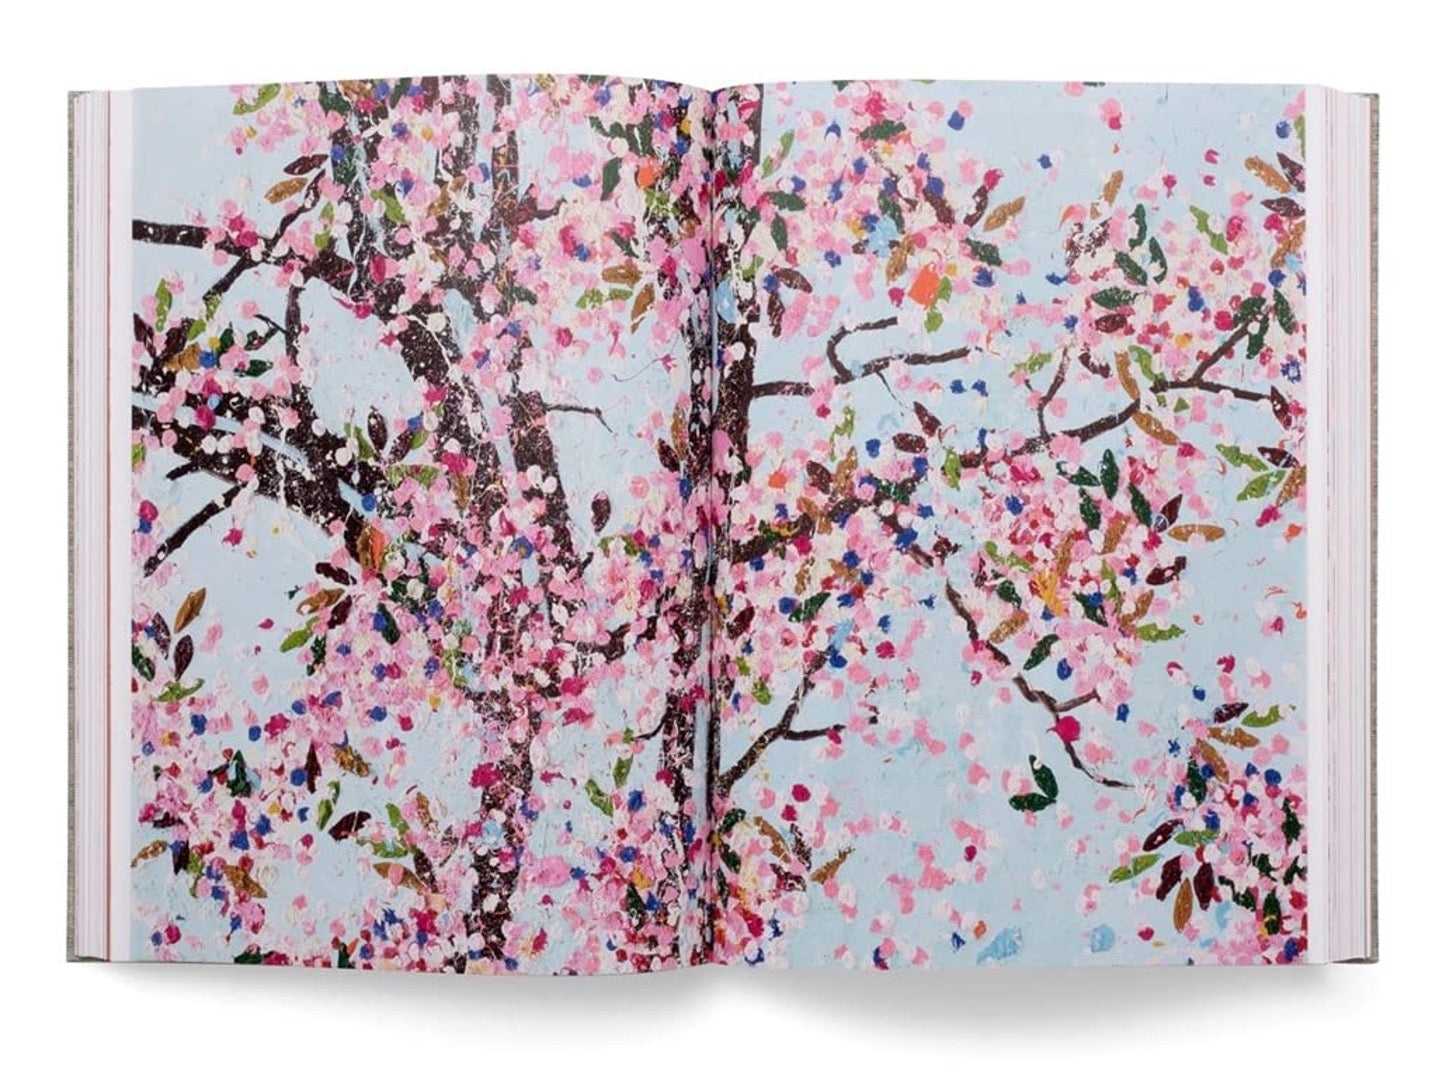 Damien Hirst Cherry Blossoms, art work by Damien Hirst.